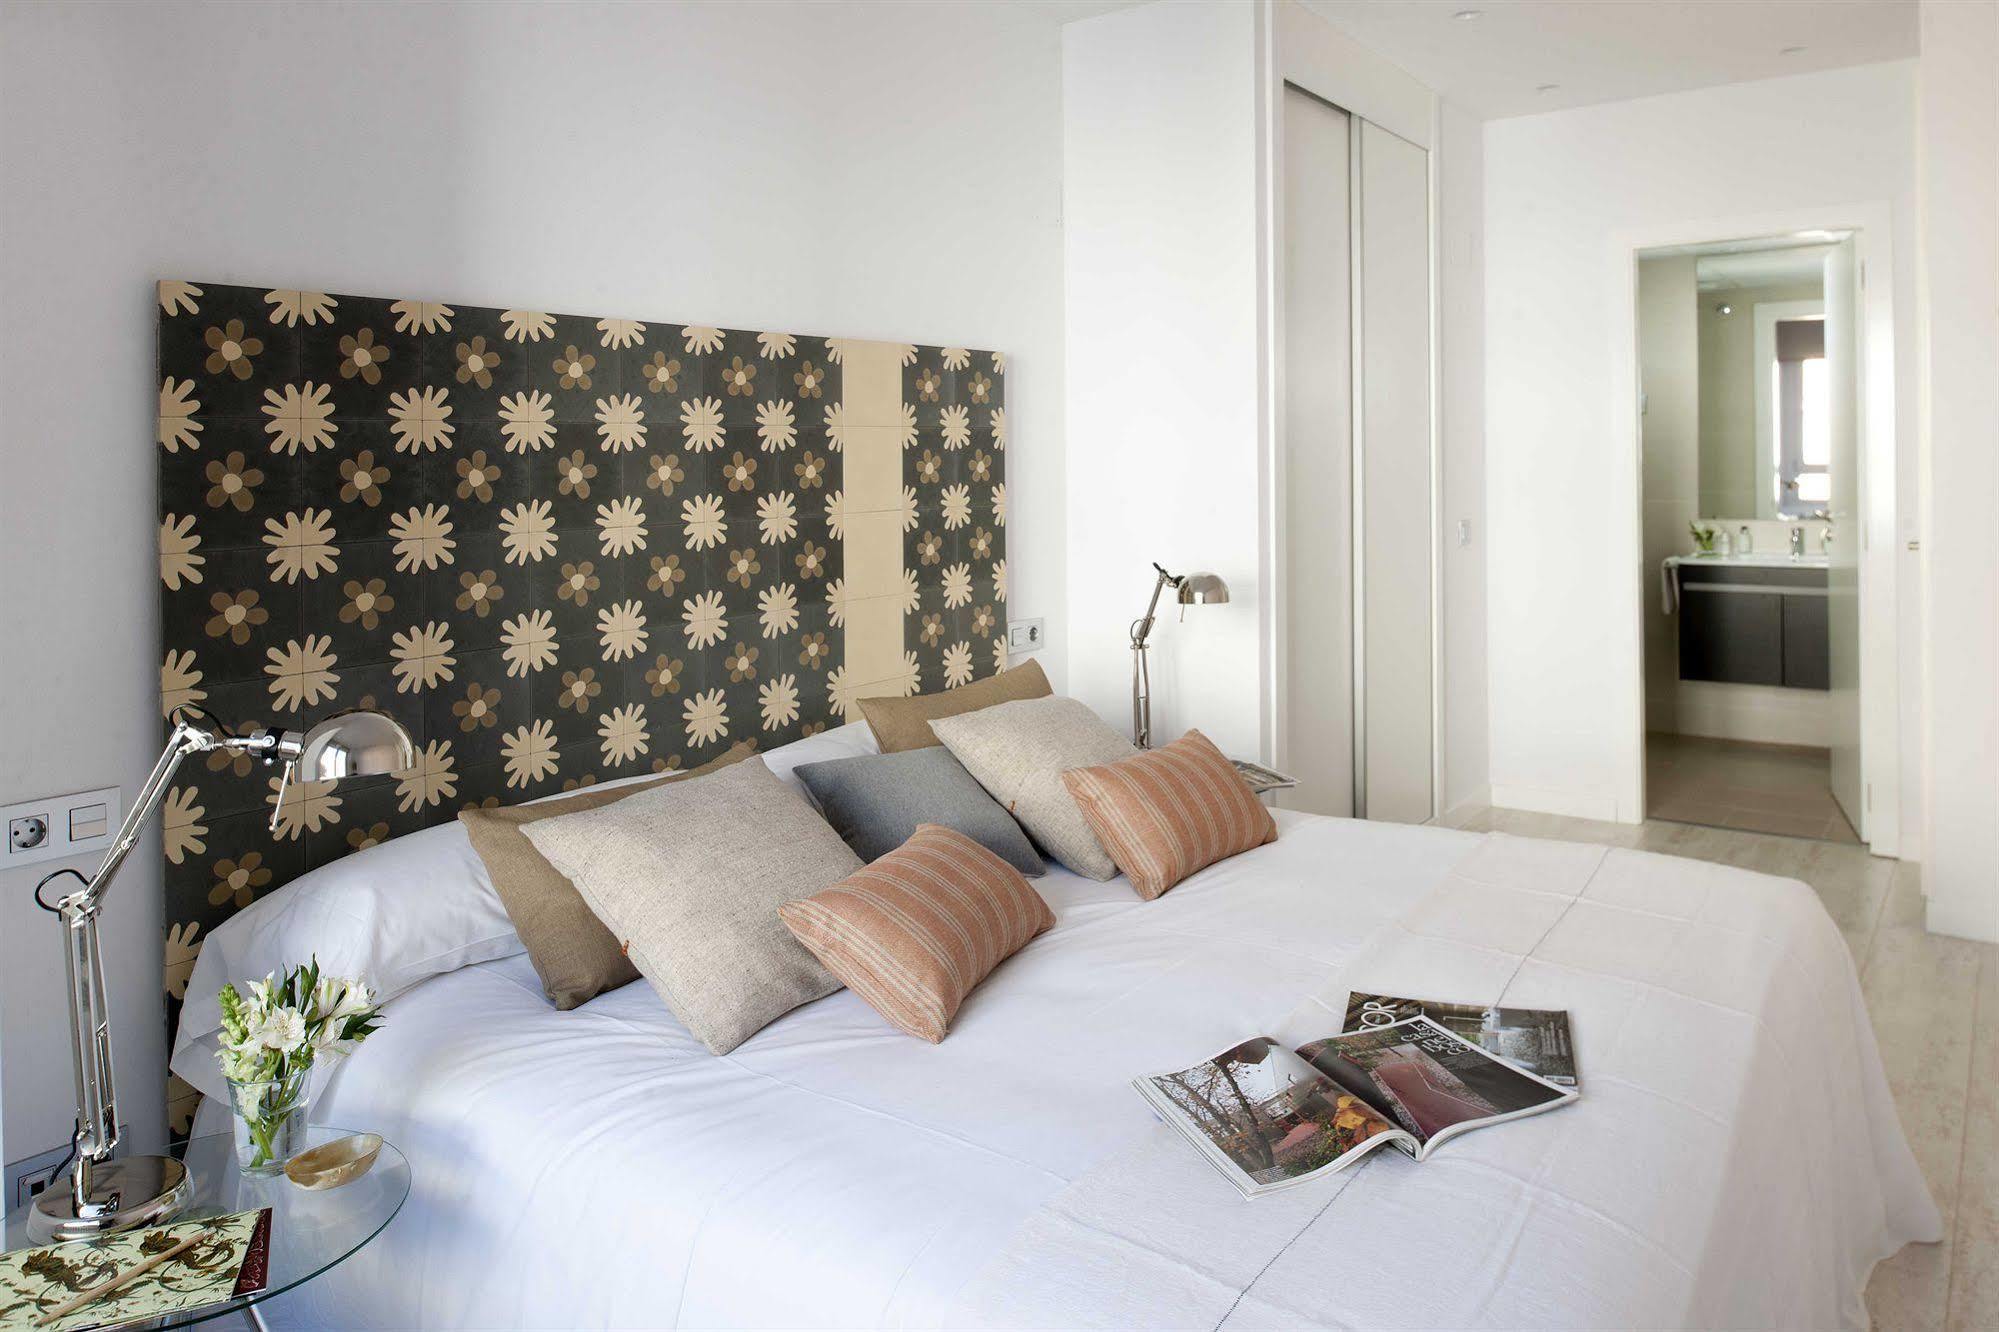 Eric Vokel Boutique Apartments - Atocha Suites Madrid Exterior photo